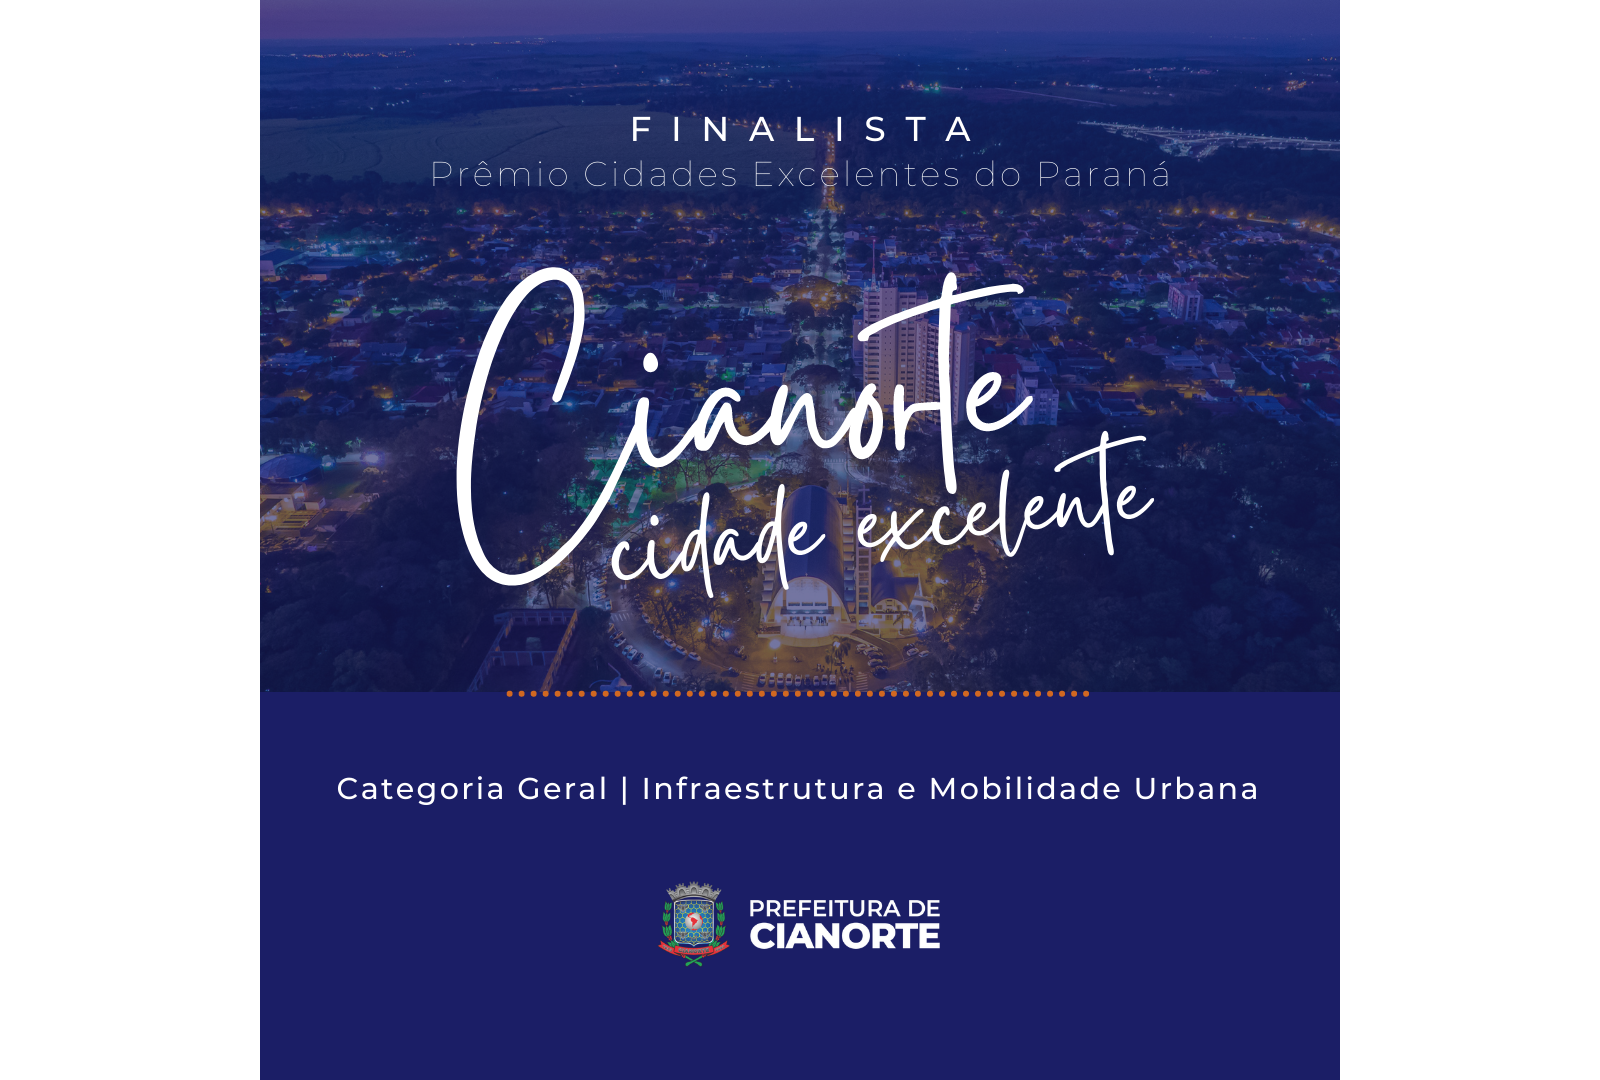 Imagem Cianorte fica em primeiro lugar no Prêmio Band Cidades Excelentes